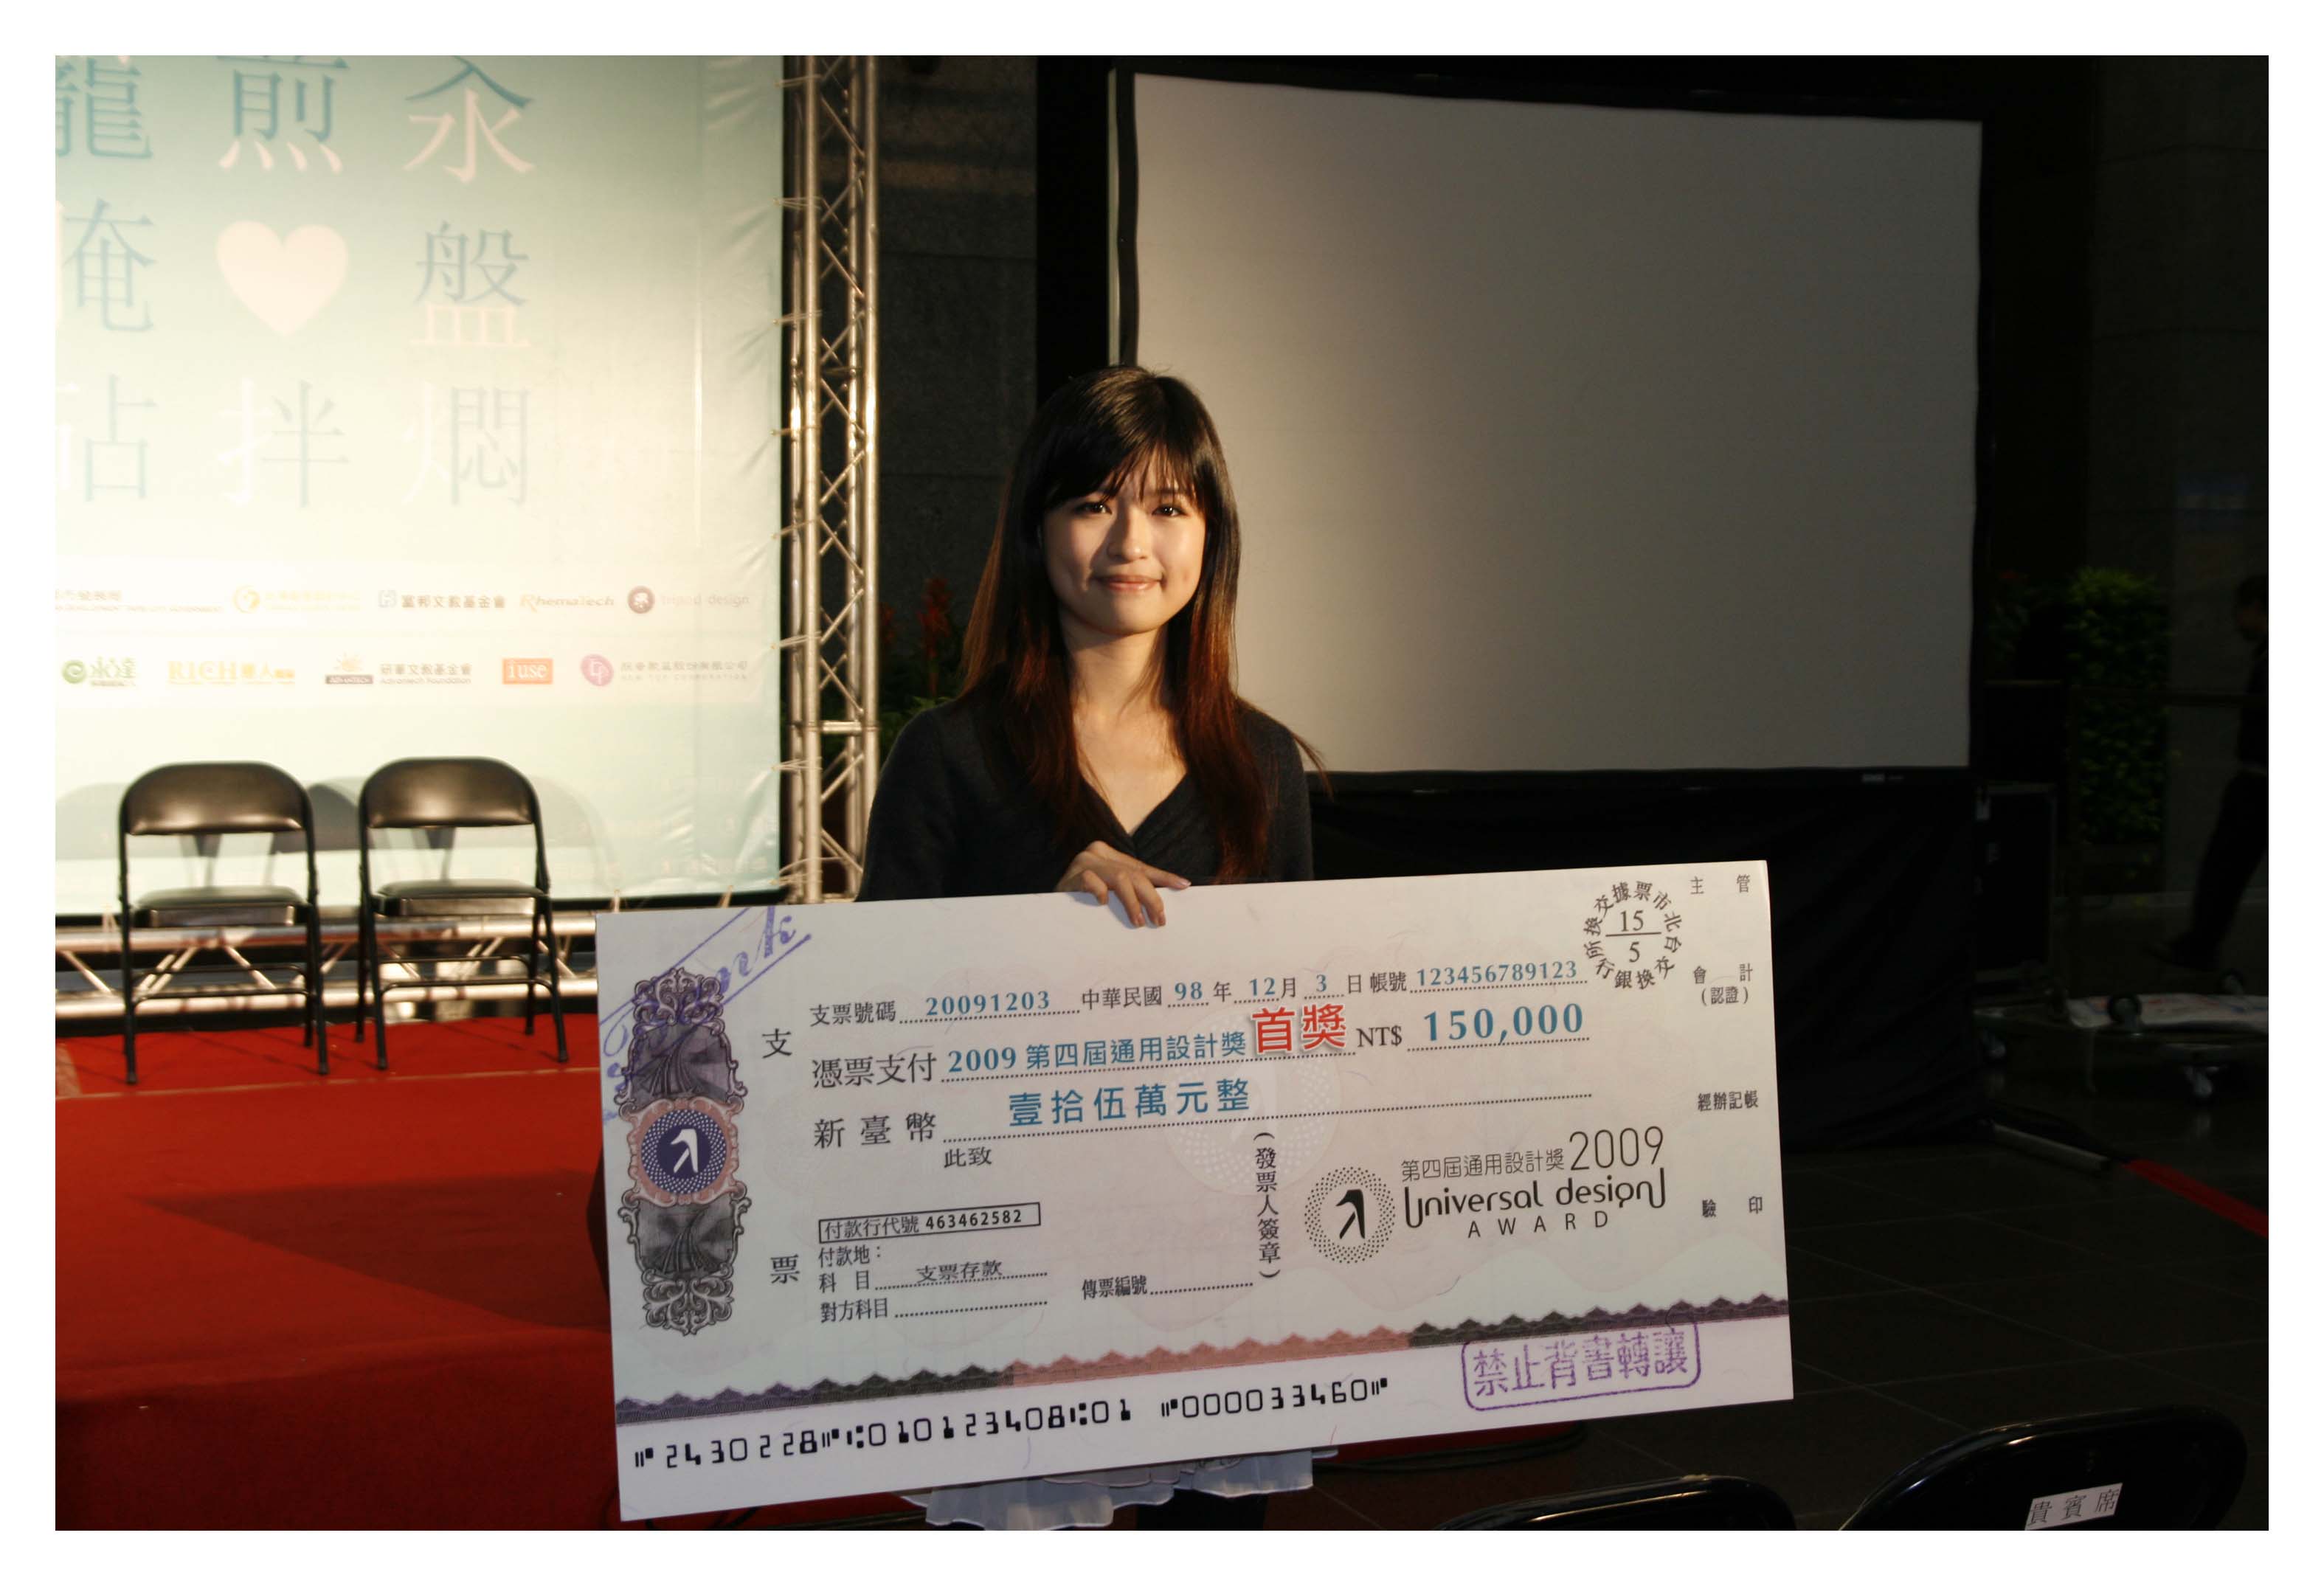 第一名黃如薇小姐與新台幣十五萬元的獎金。